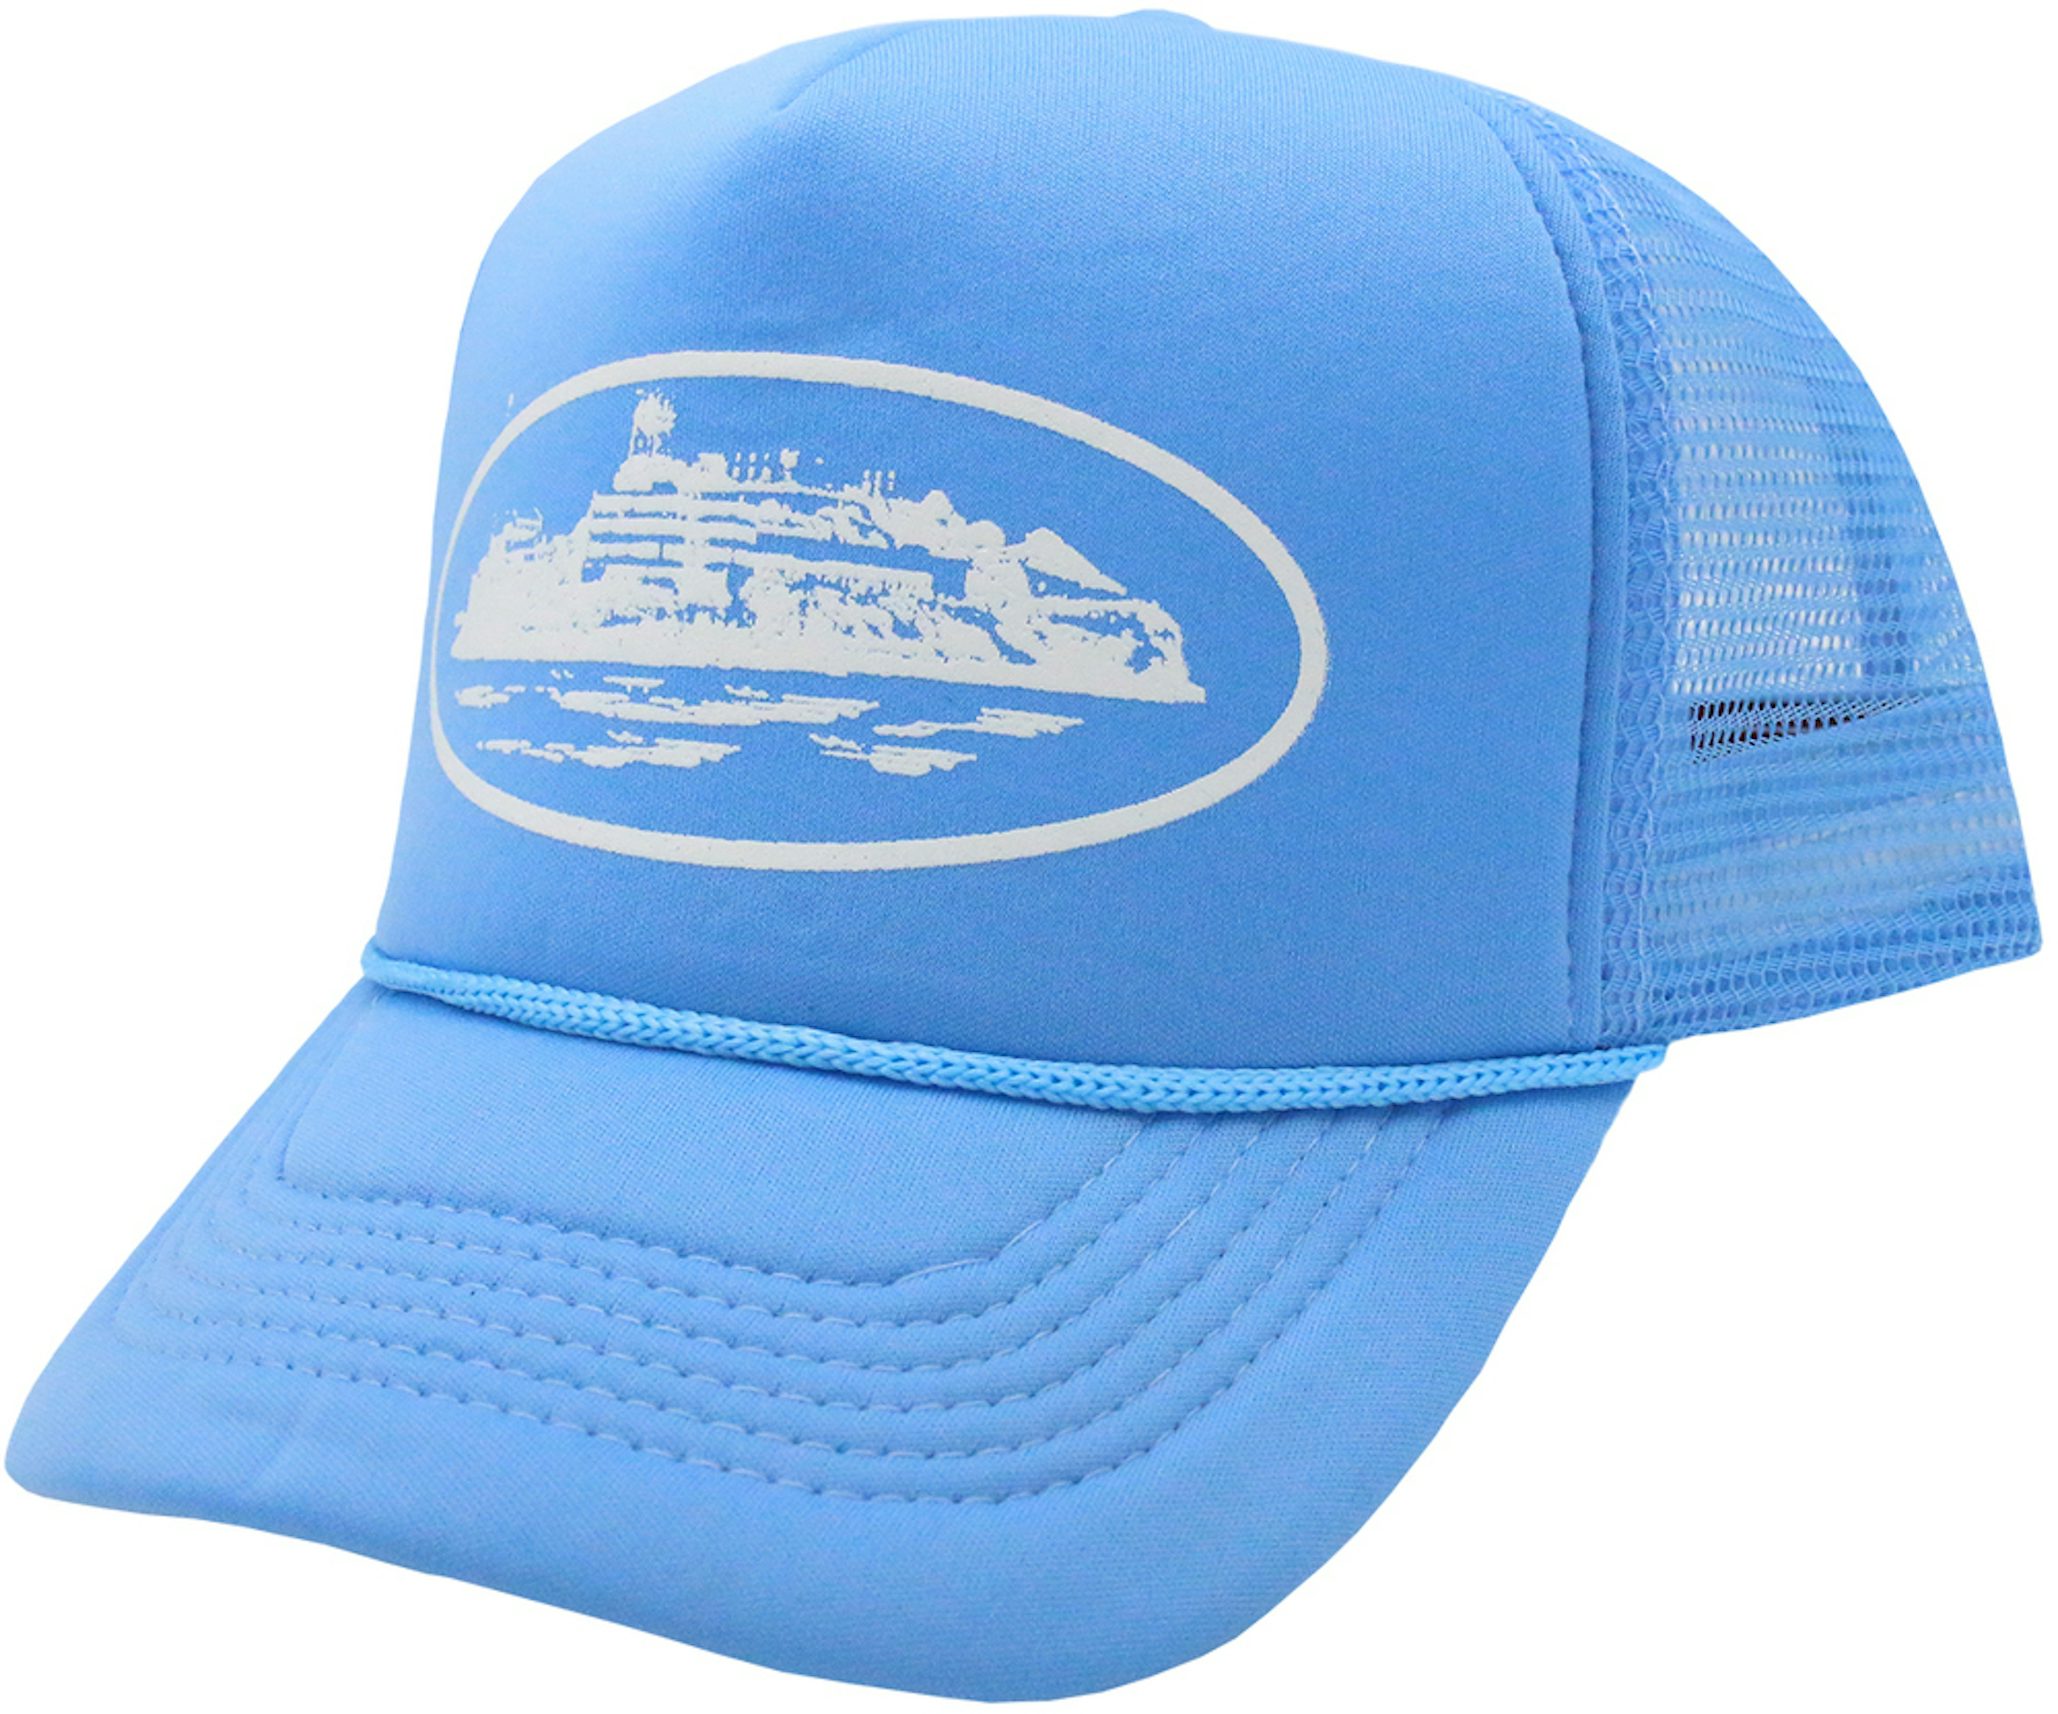 Mour Cap - Saint Louis Trucker Hat Sky Blue